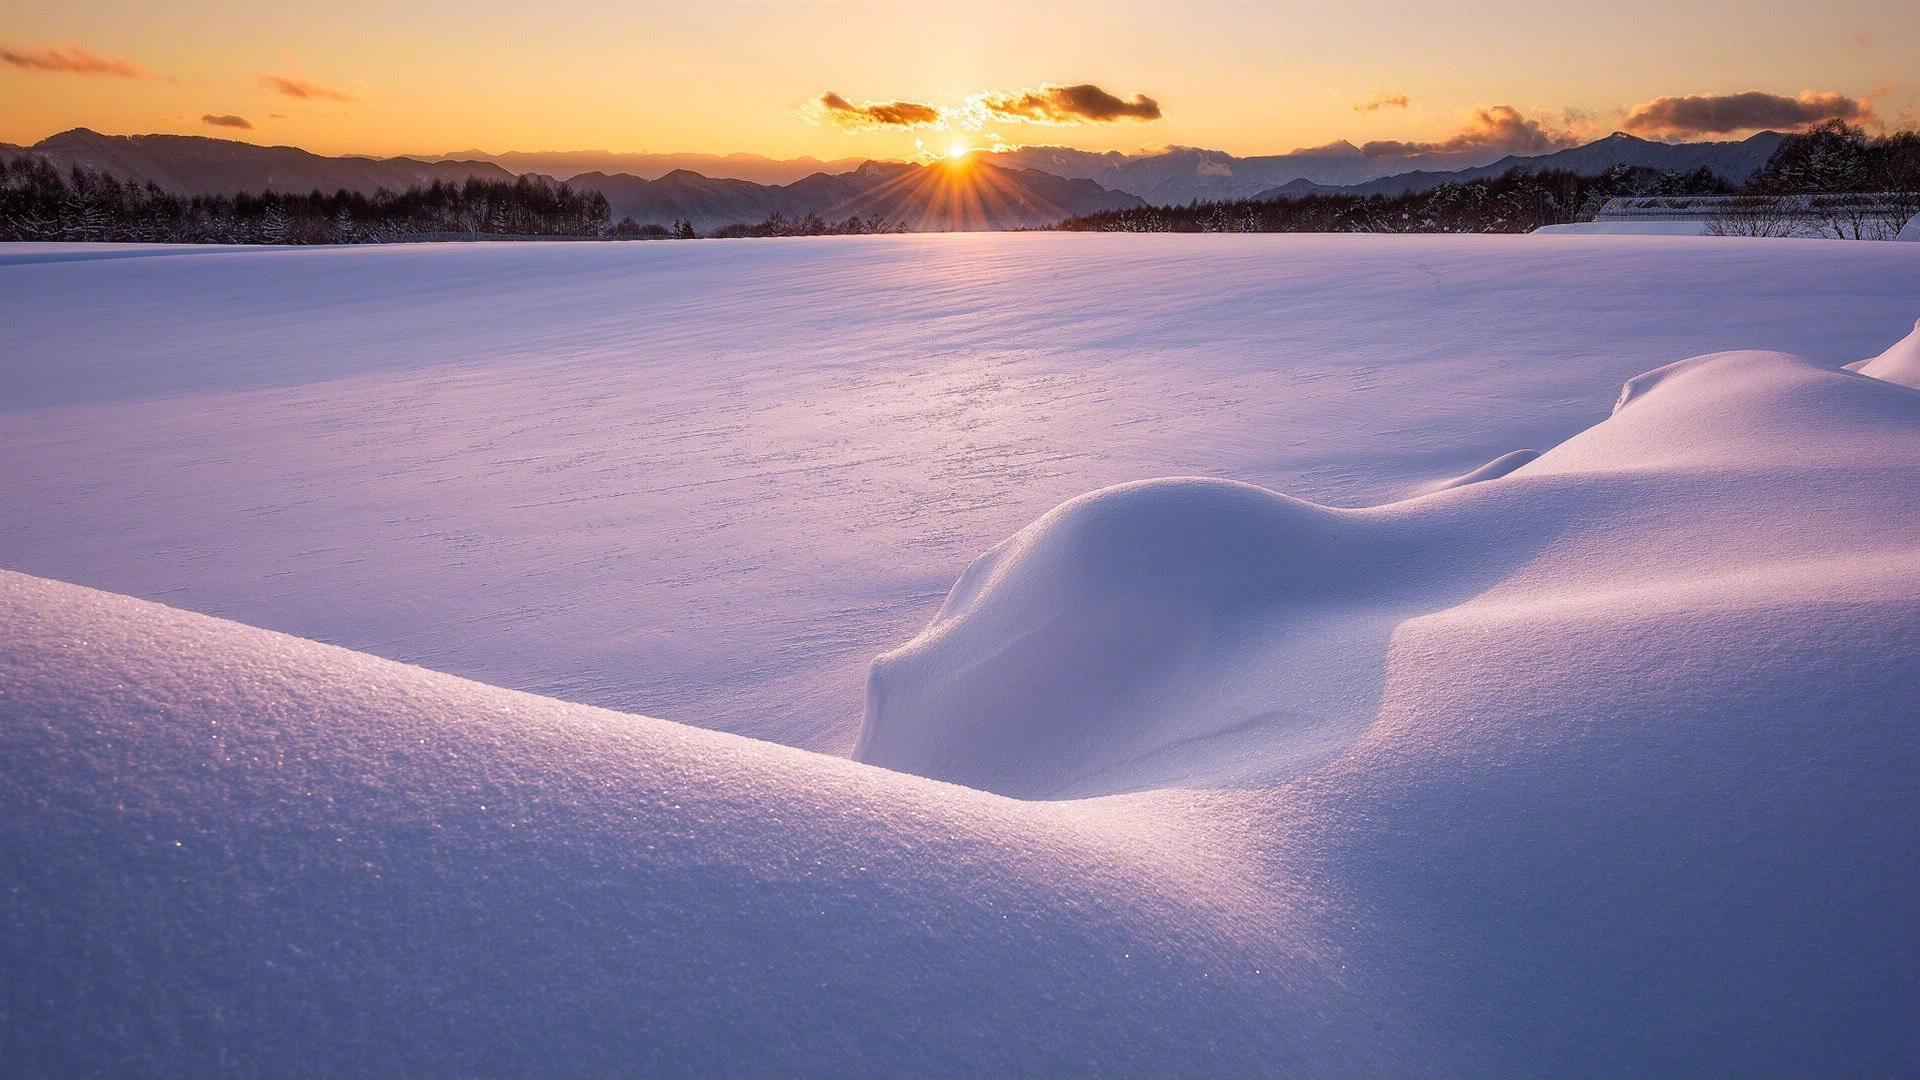 Beautiful snow scene picture wallpaper